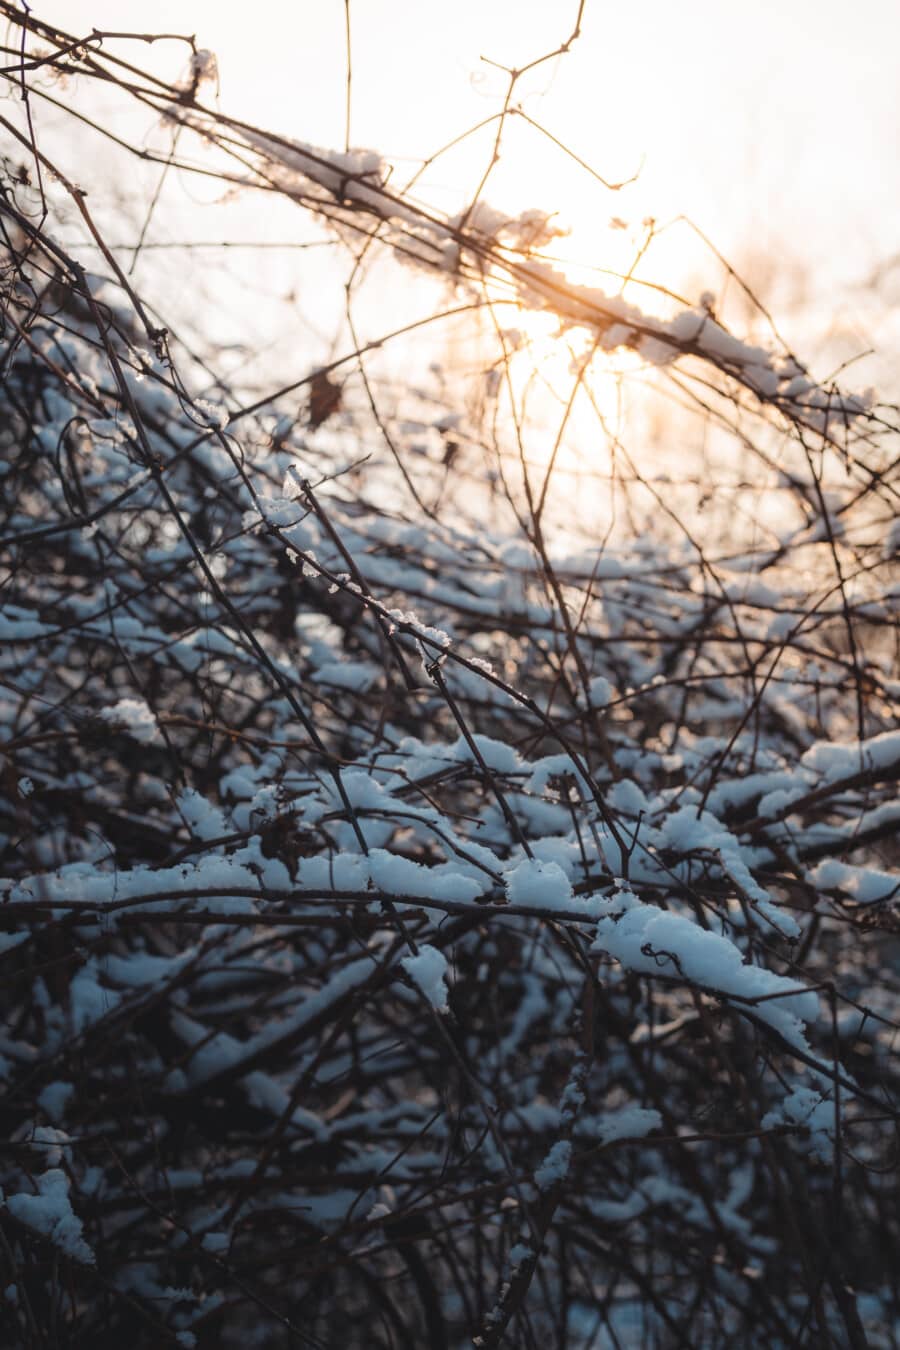 grančice, snježno, grm, sunčeva svjetlost, pozadinsko svijetlo, drvo, snijeg, grana, zima, hladno